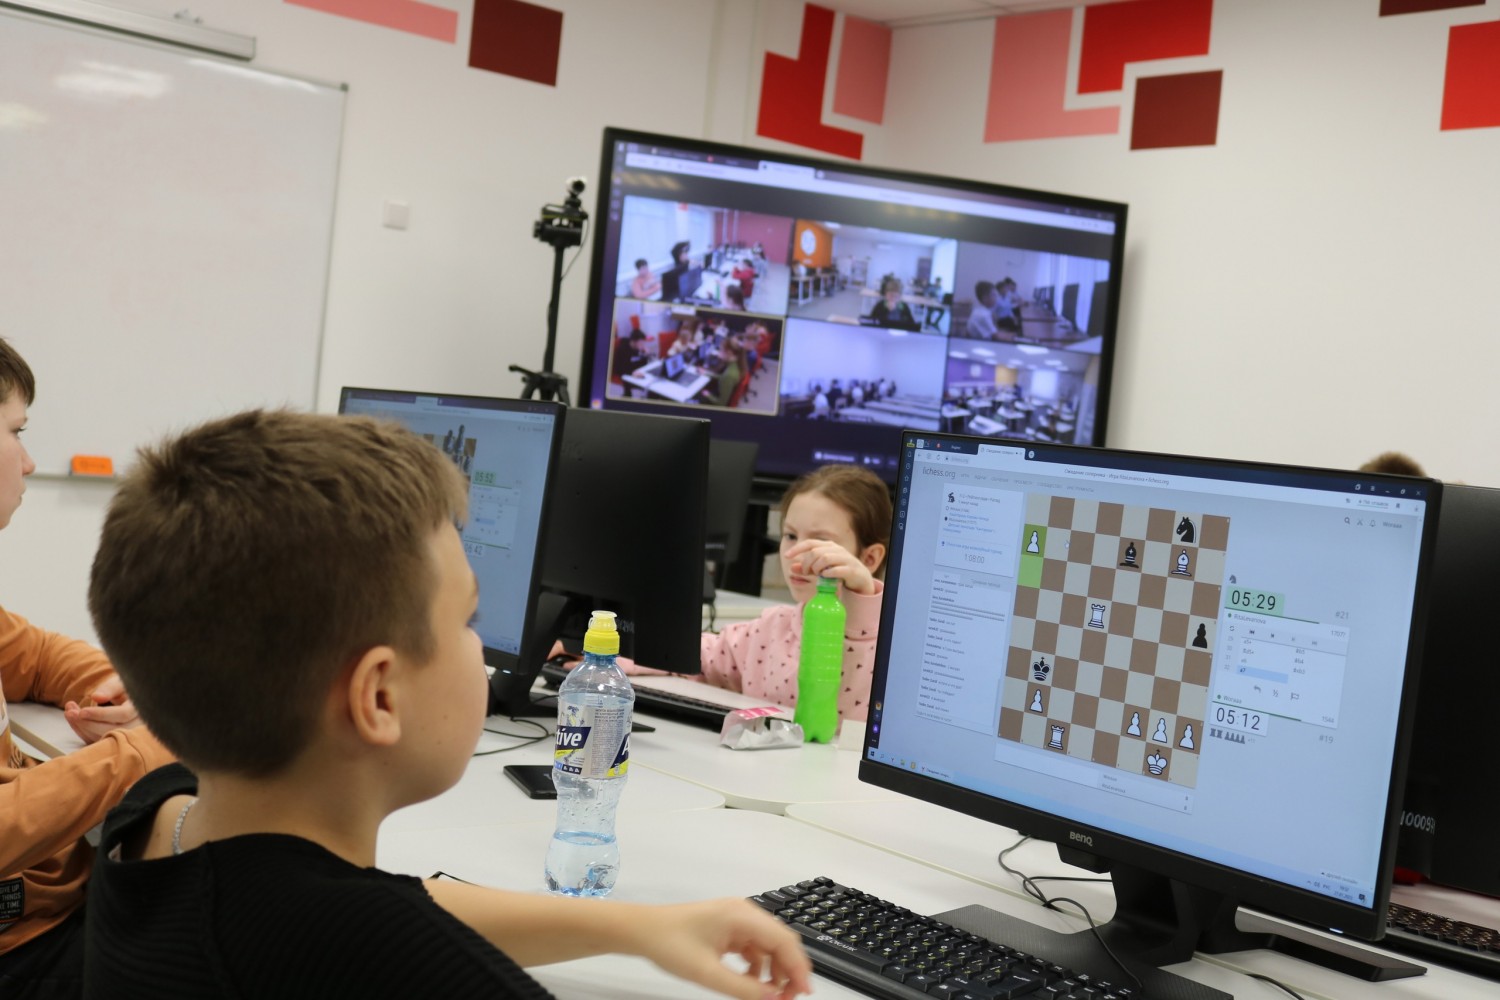 Кирово-Чепецкие шахматисты одержали победу в I открытом межрегиональном лично-командном шахматном турнире